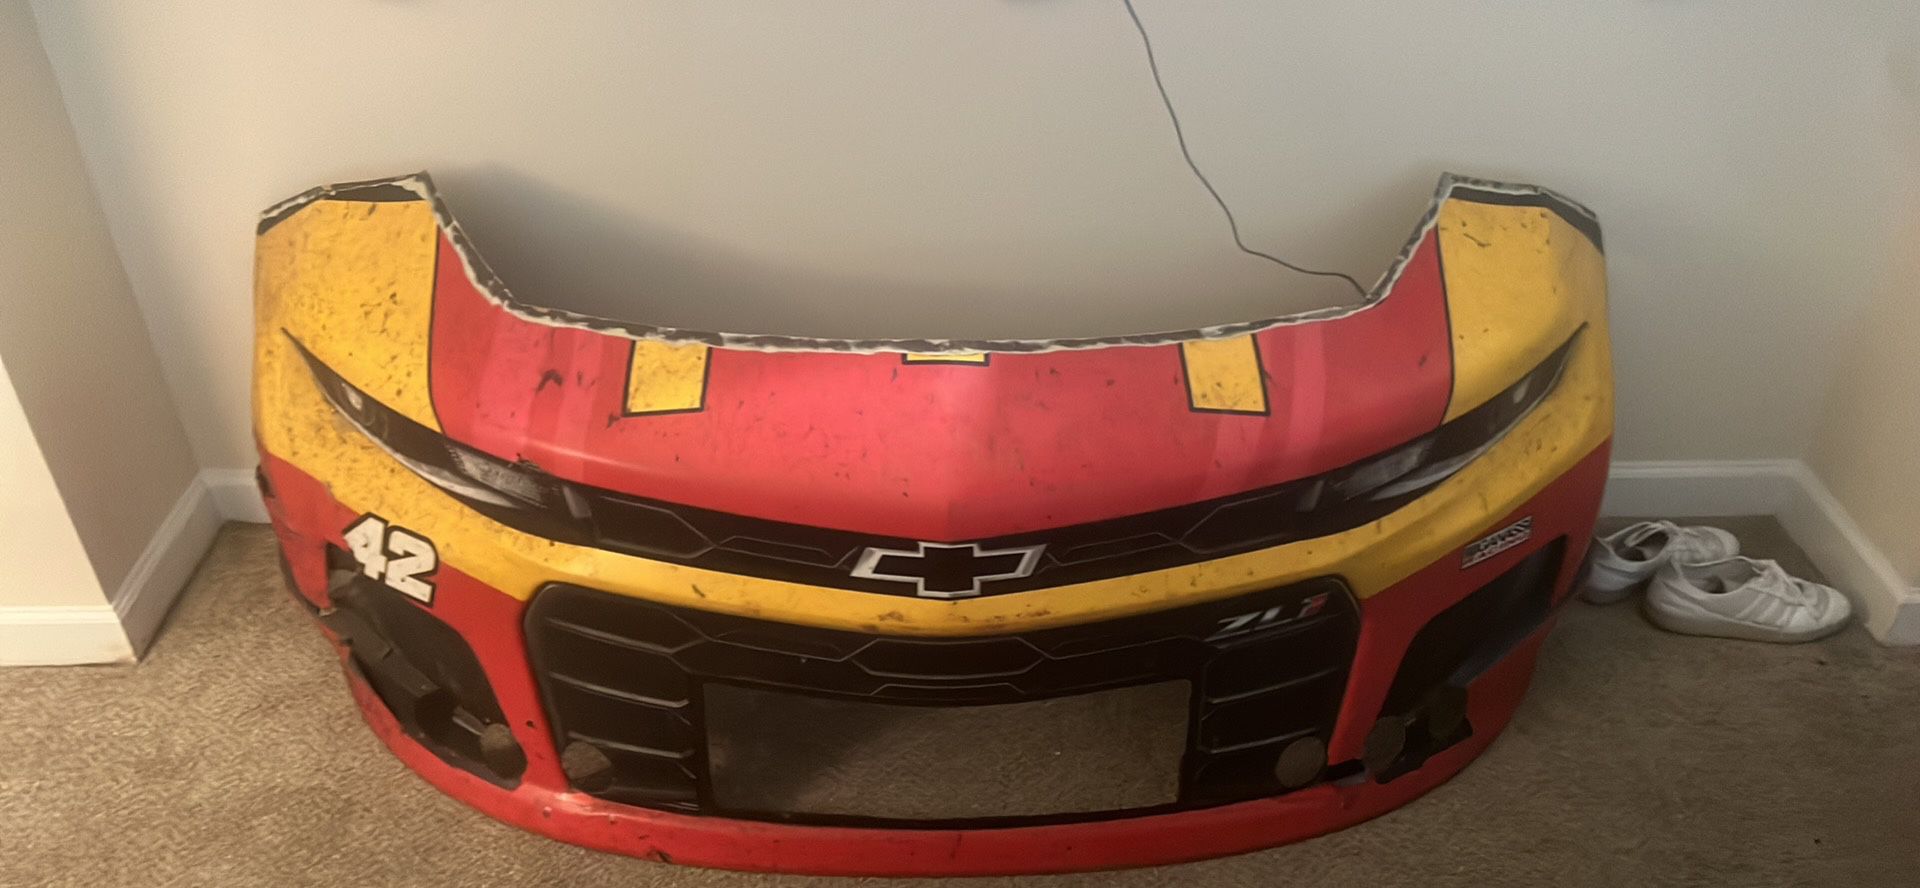 Ross Chastain’s 2021 NASCAR Bumper